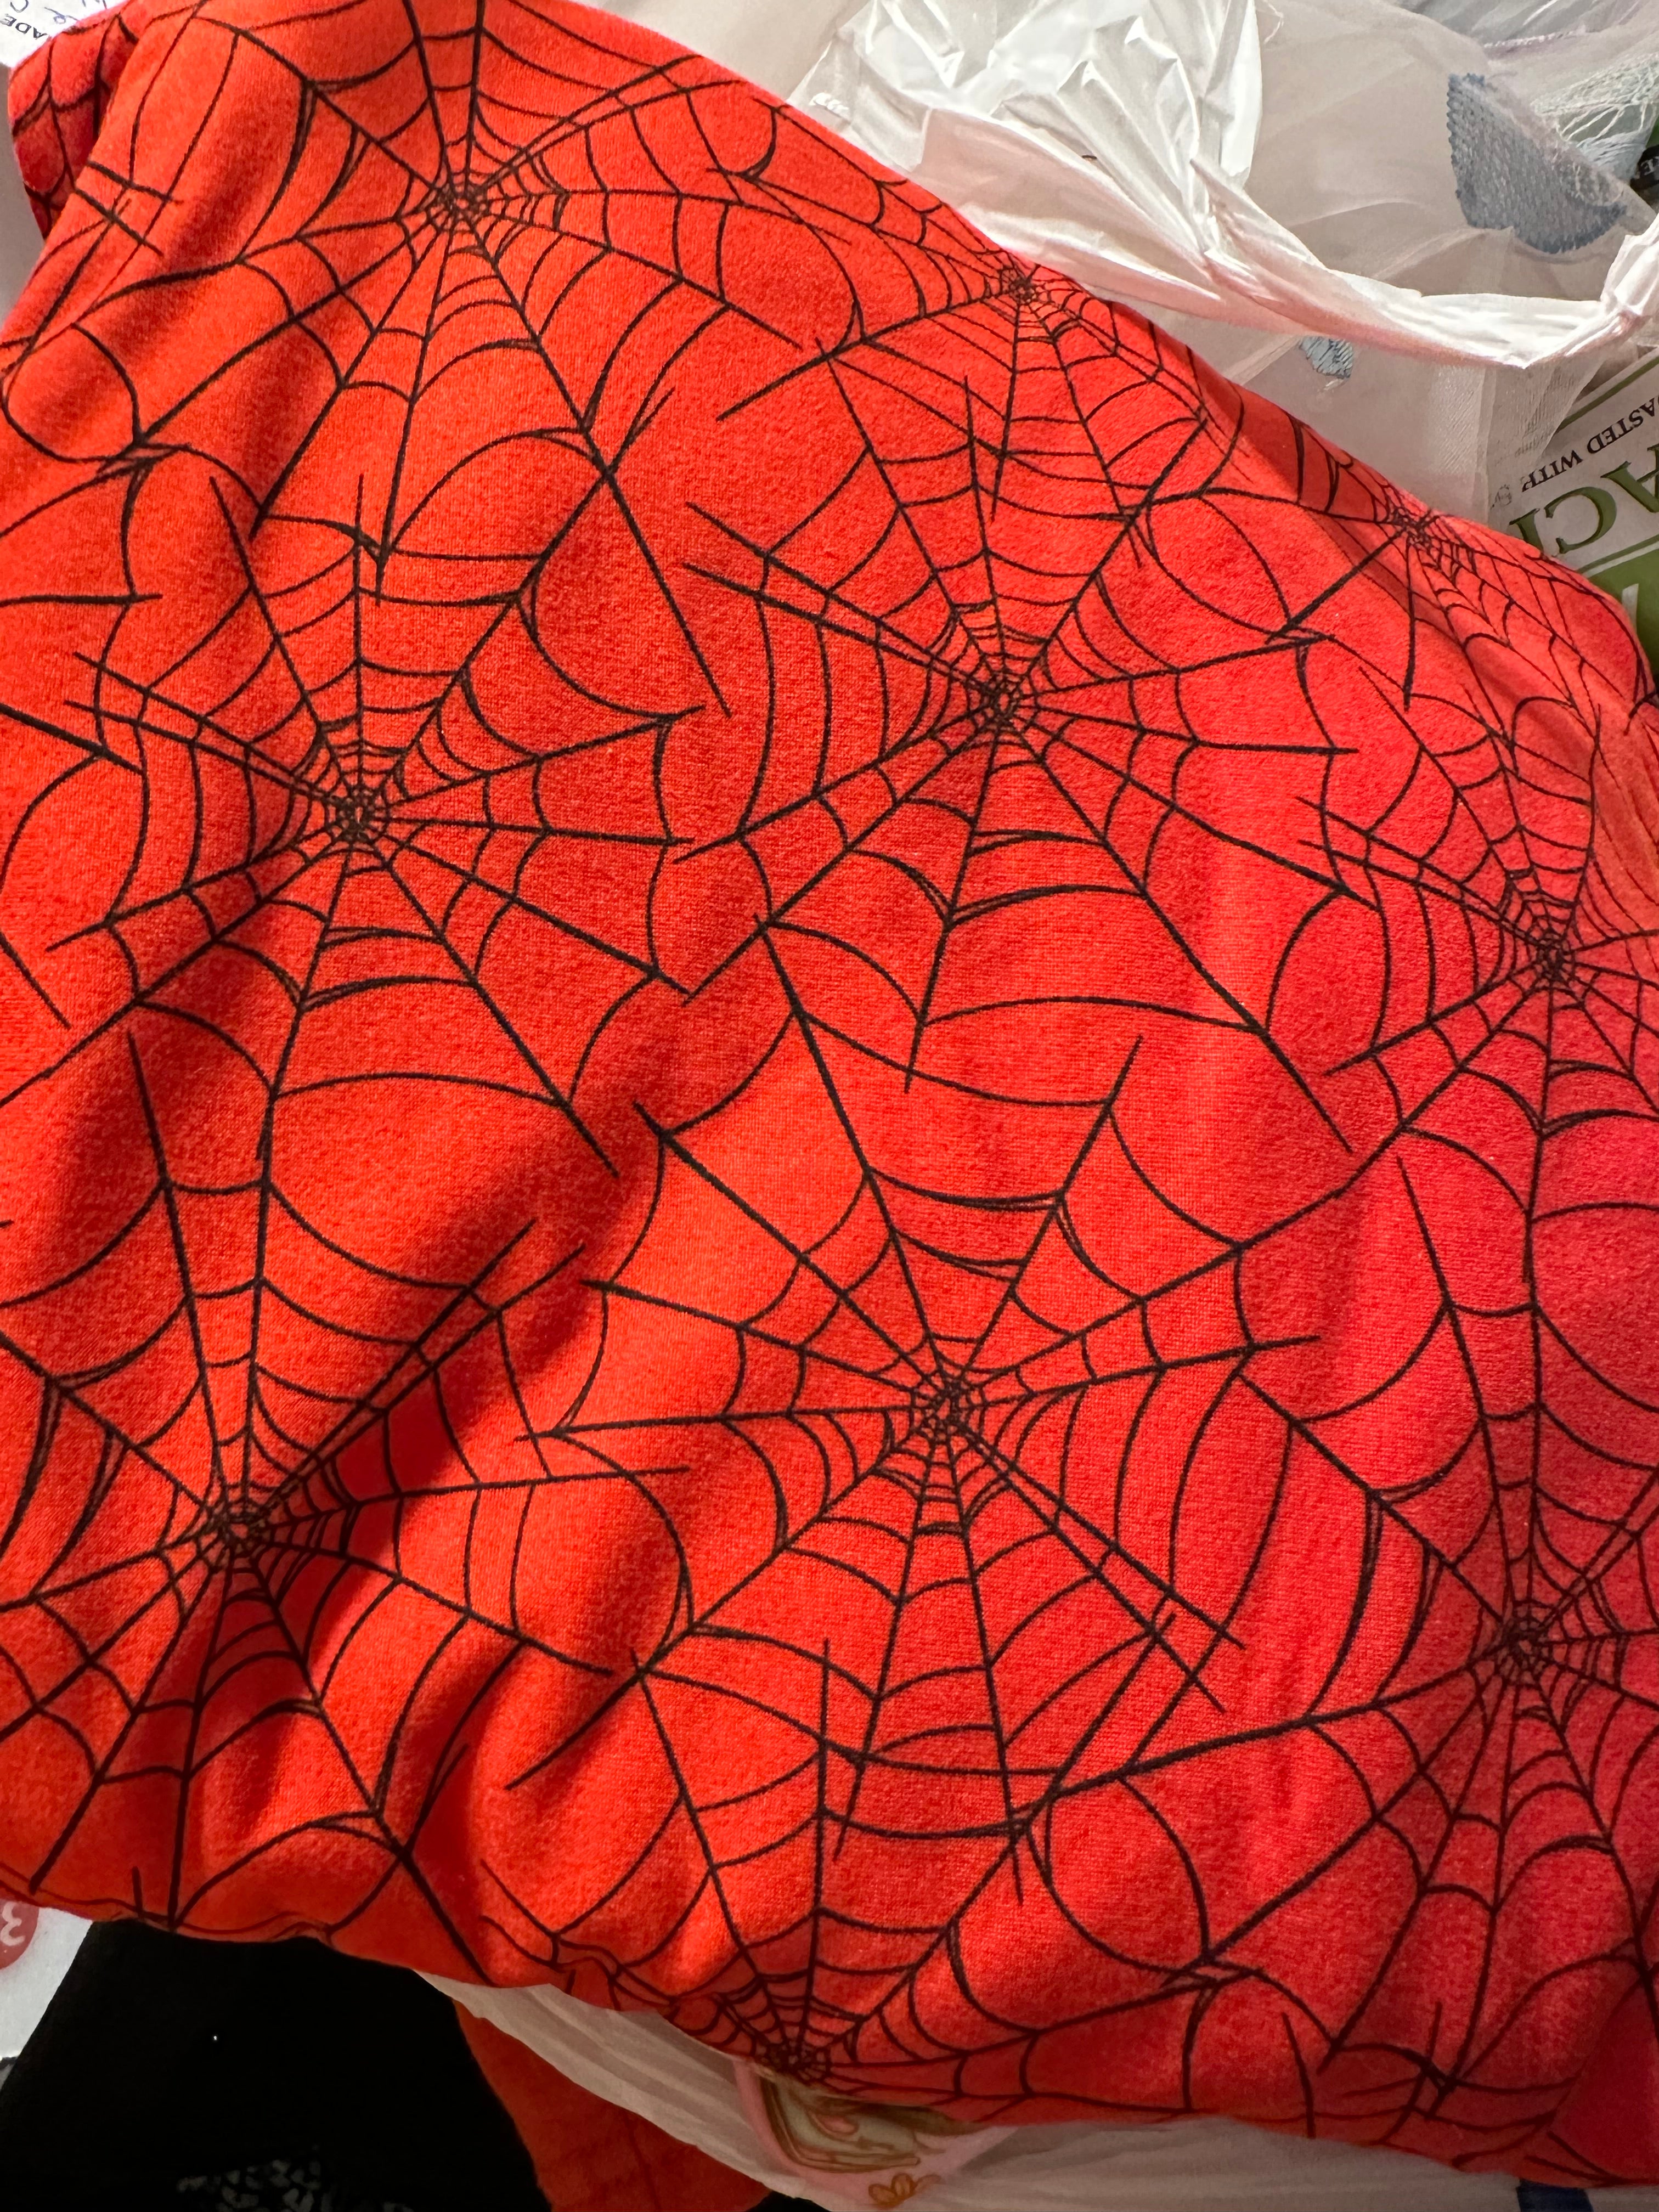 Red spiderweb